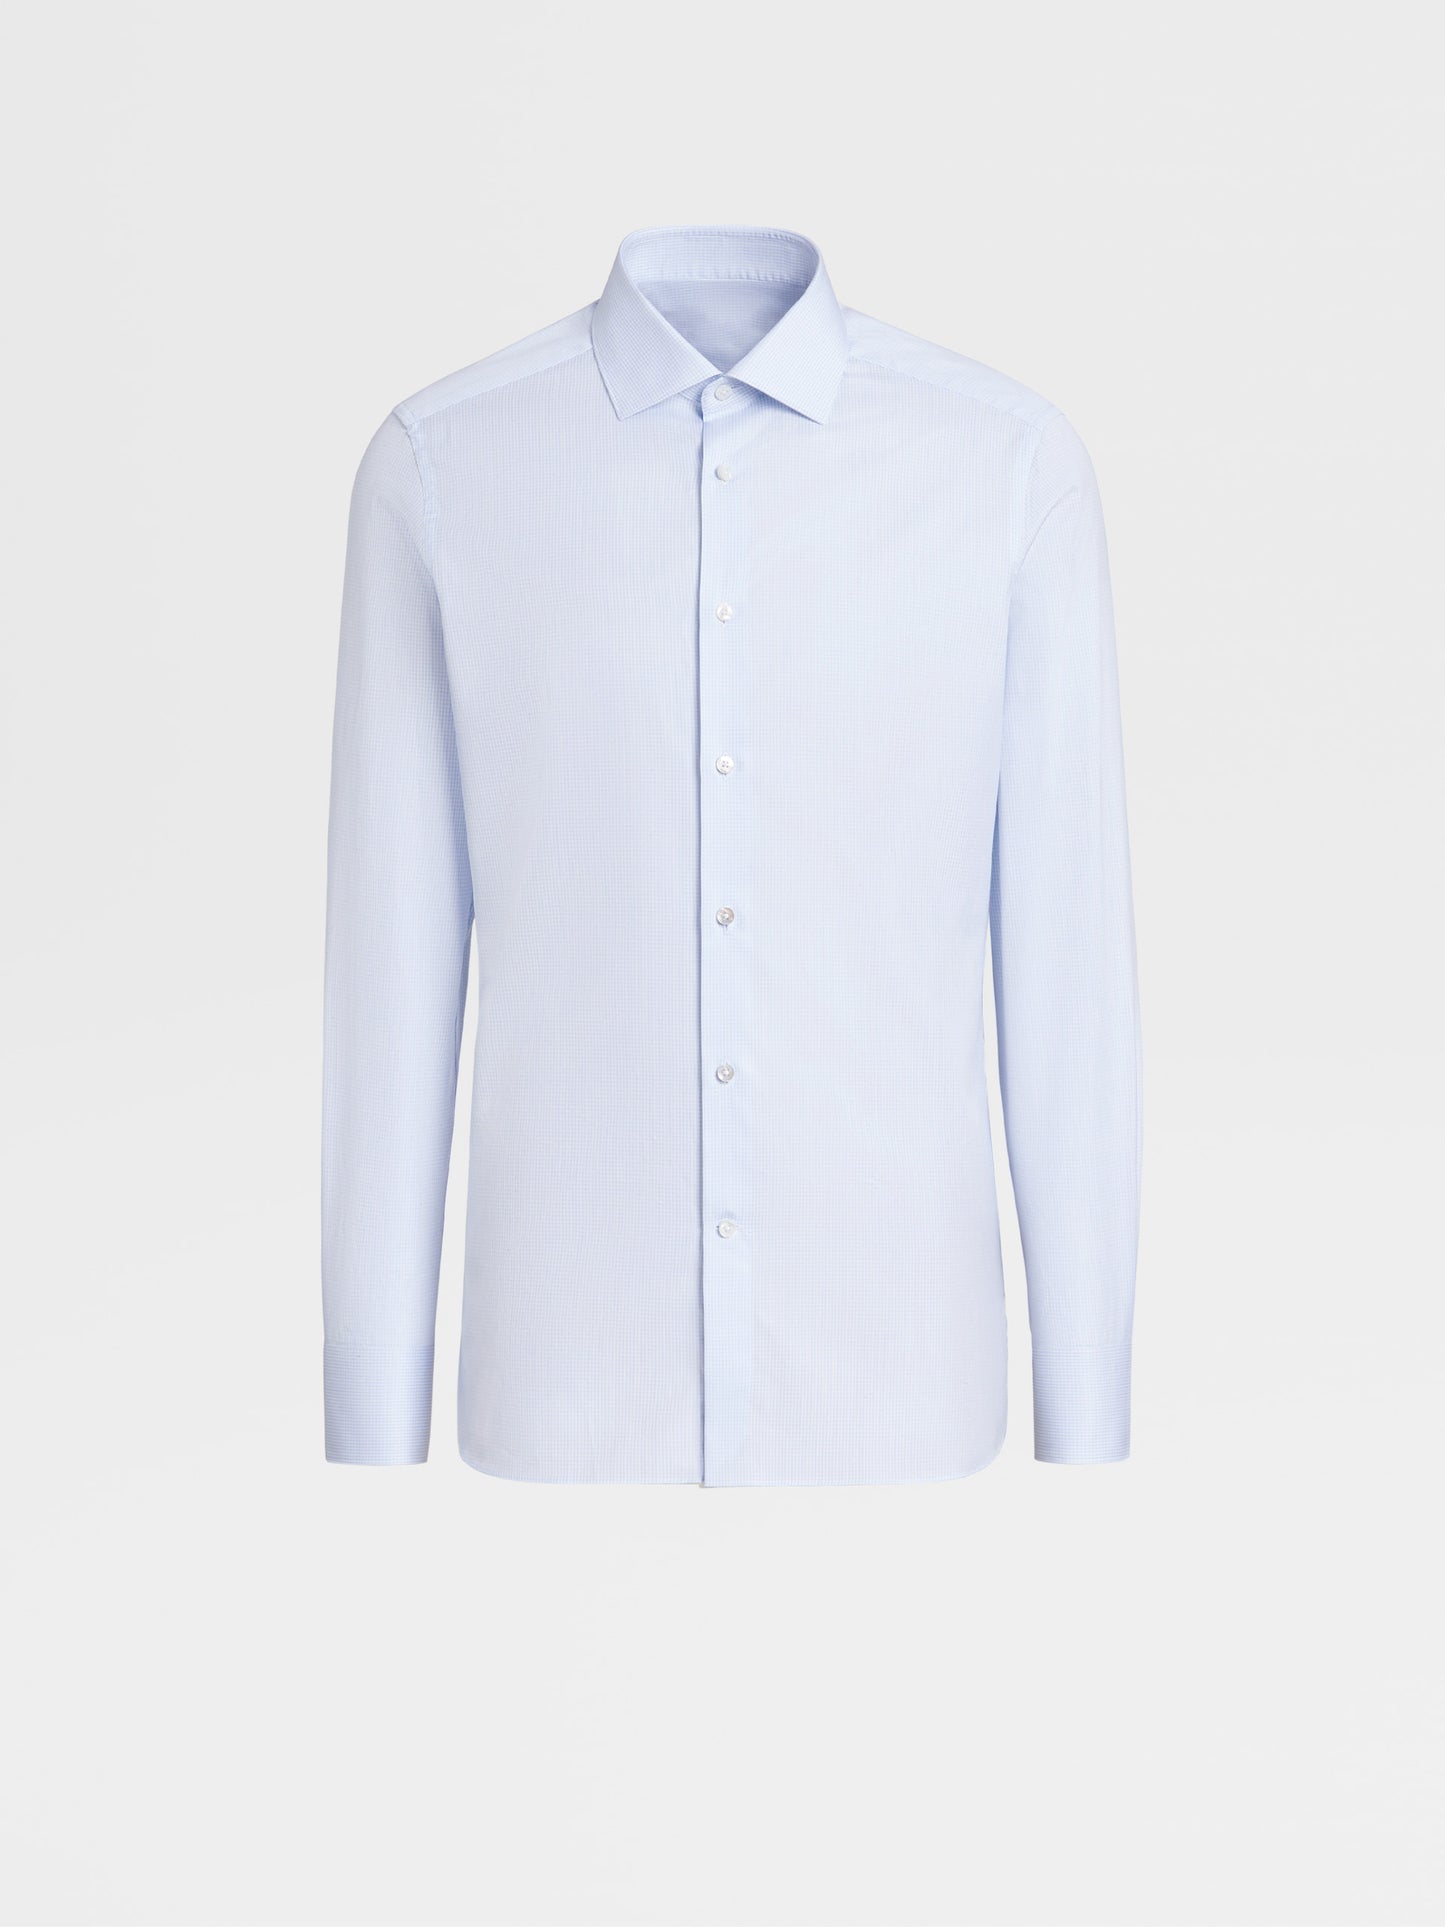 淺藍色與白色 TROFEO 棉絲小格紋長袖襯衫